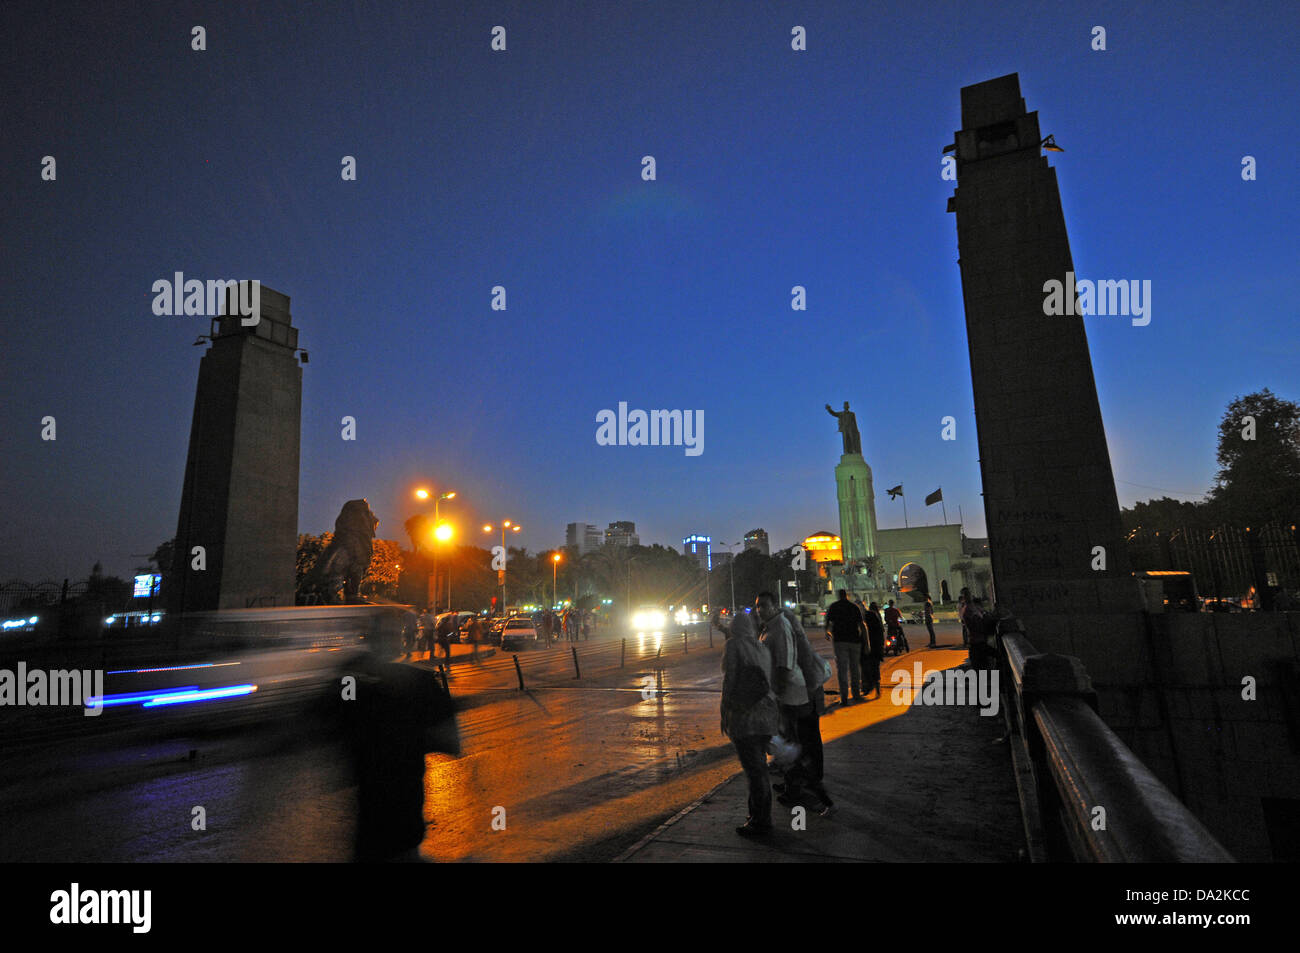 Qasr al-nil ponte con il Saad Zaghloul monumento è una trafficata strada di accesso a Piazza Tahrir al Cairo, Egitto, 28 giugno 2013. Il ponte collega il Nilo isola Zamalek e il centro del Cairo. Foto: MATTHIAS TOEDT Foto Stock